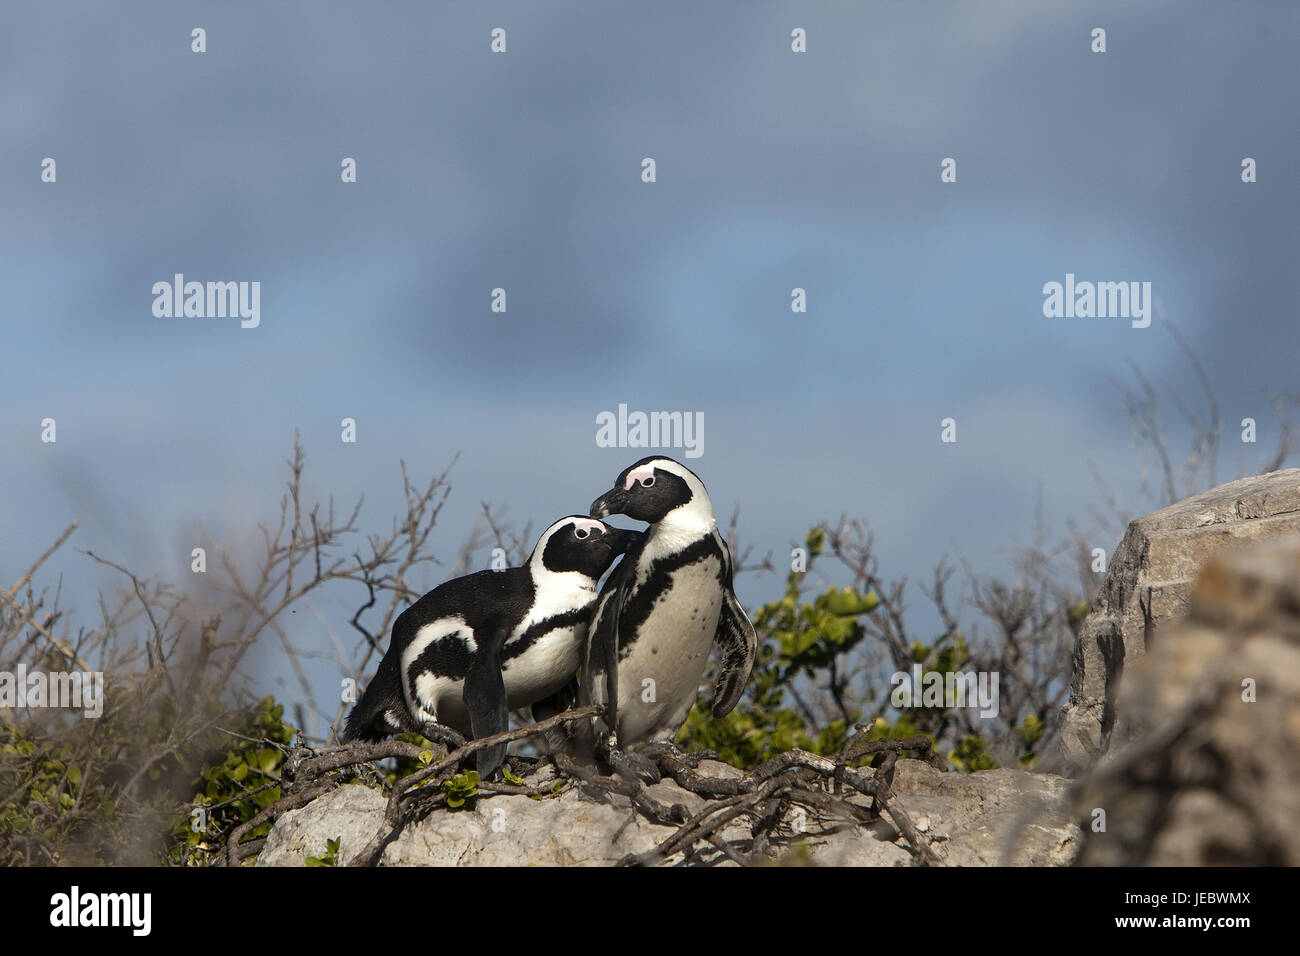 Glass penguins, Spheniscus demersus, Stock Photo